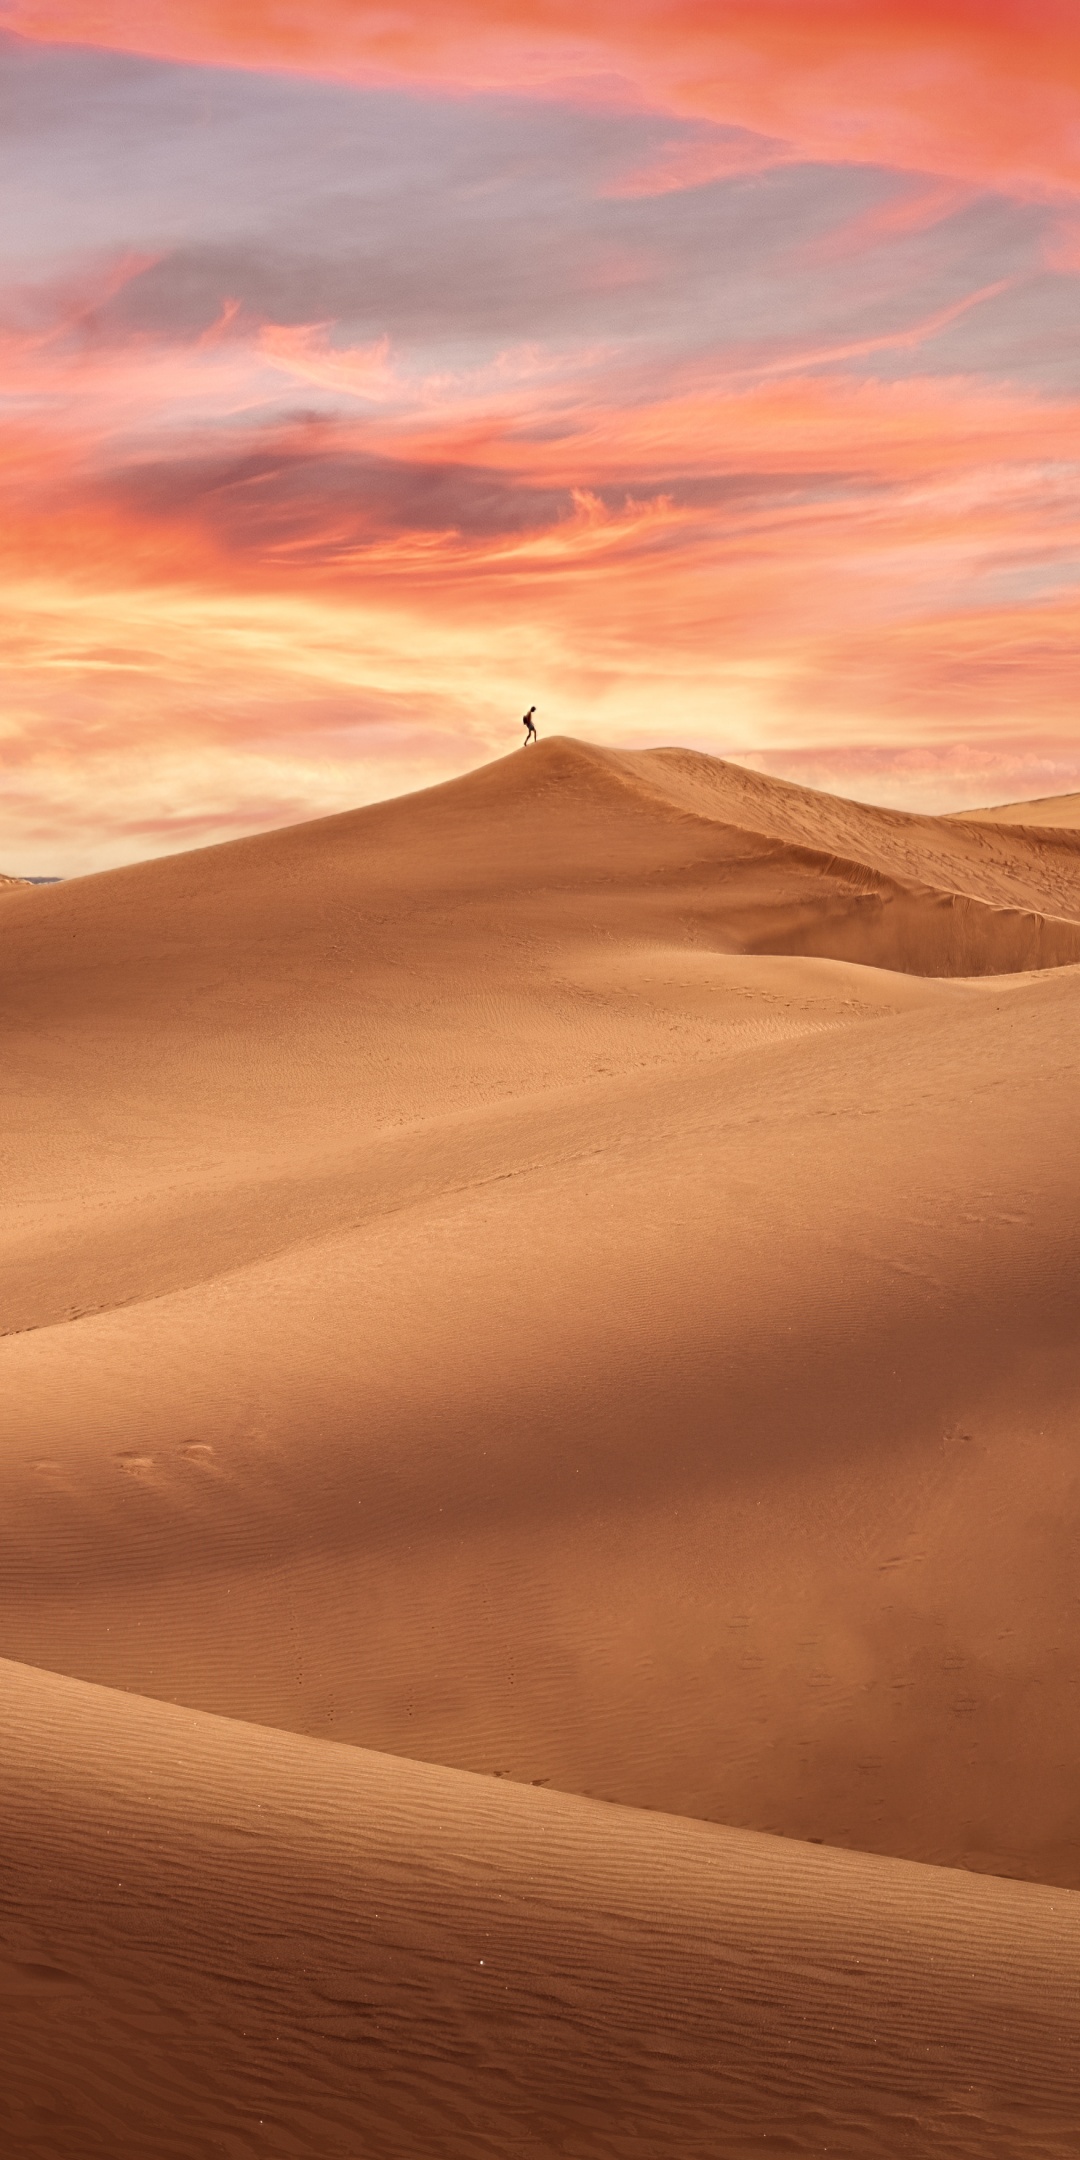 Desert 4K Wallpaper, Sand Dunes, Alone, Sunset, Evening, 5K, Nature, #5417